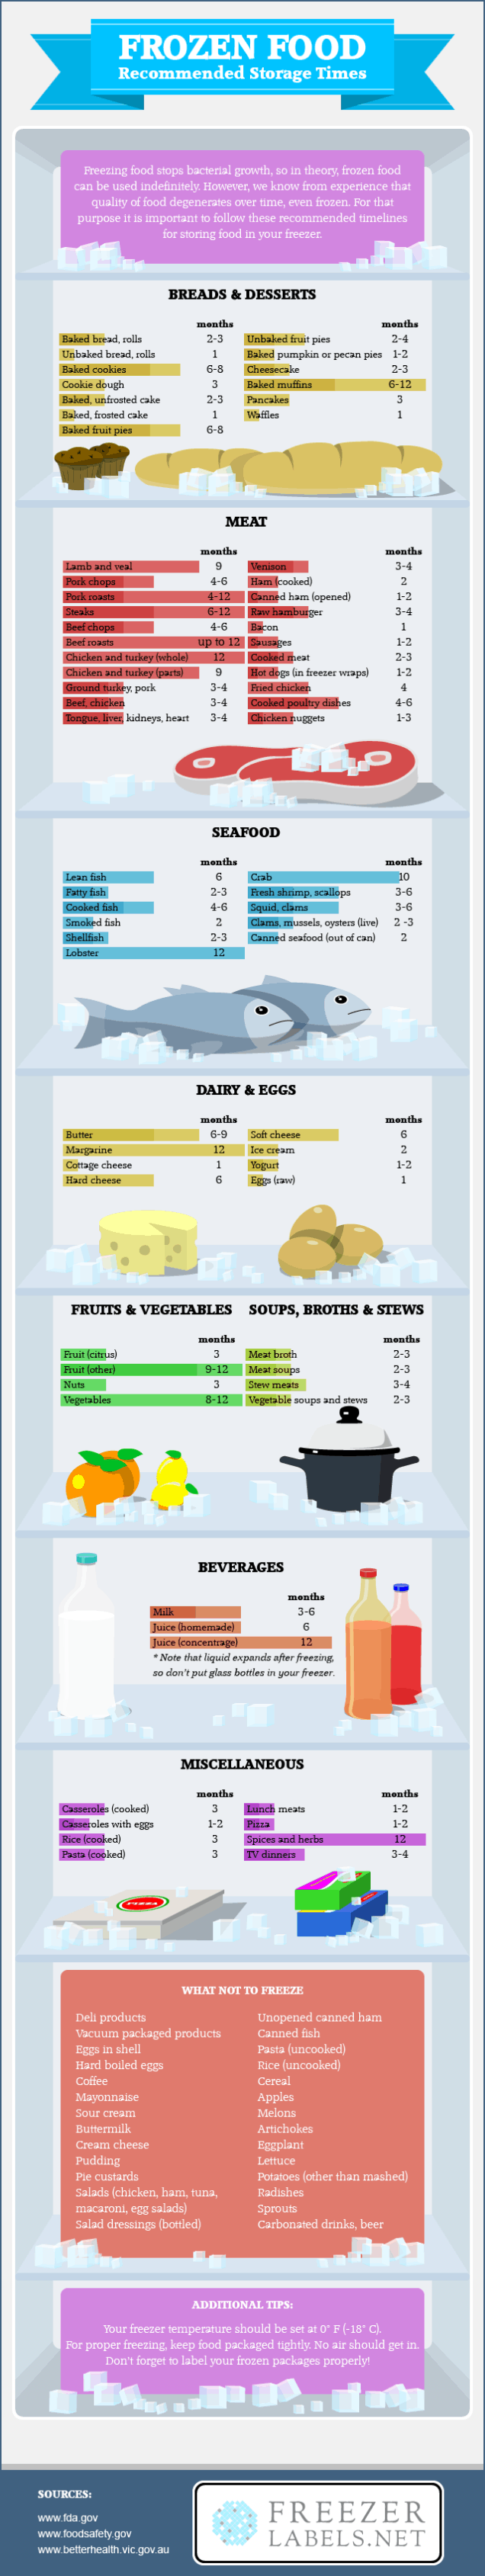 Frozen Food Storage Infographic